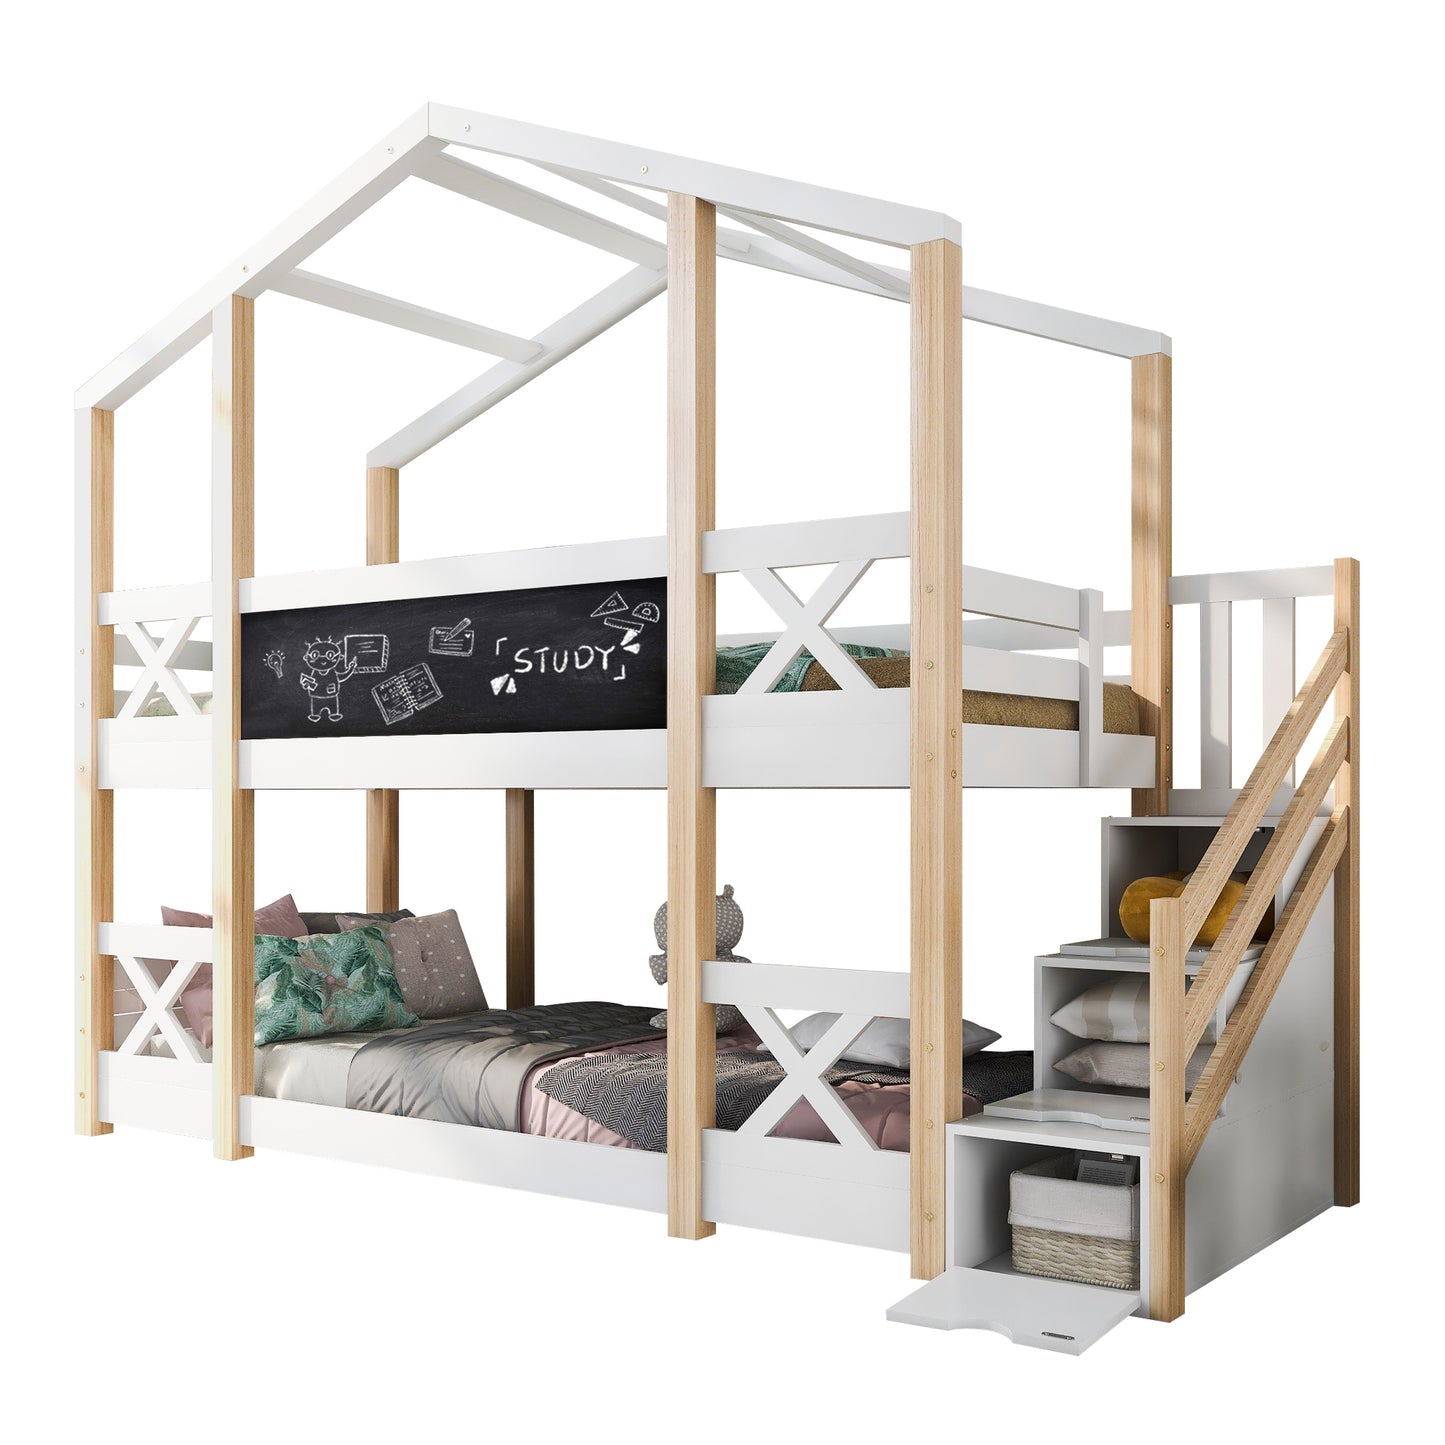 Barnsäng säng  90 x 200 cm, loft säng för barn- 2x Slamated Frame Nature & White